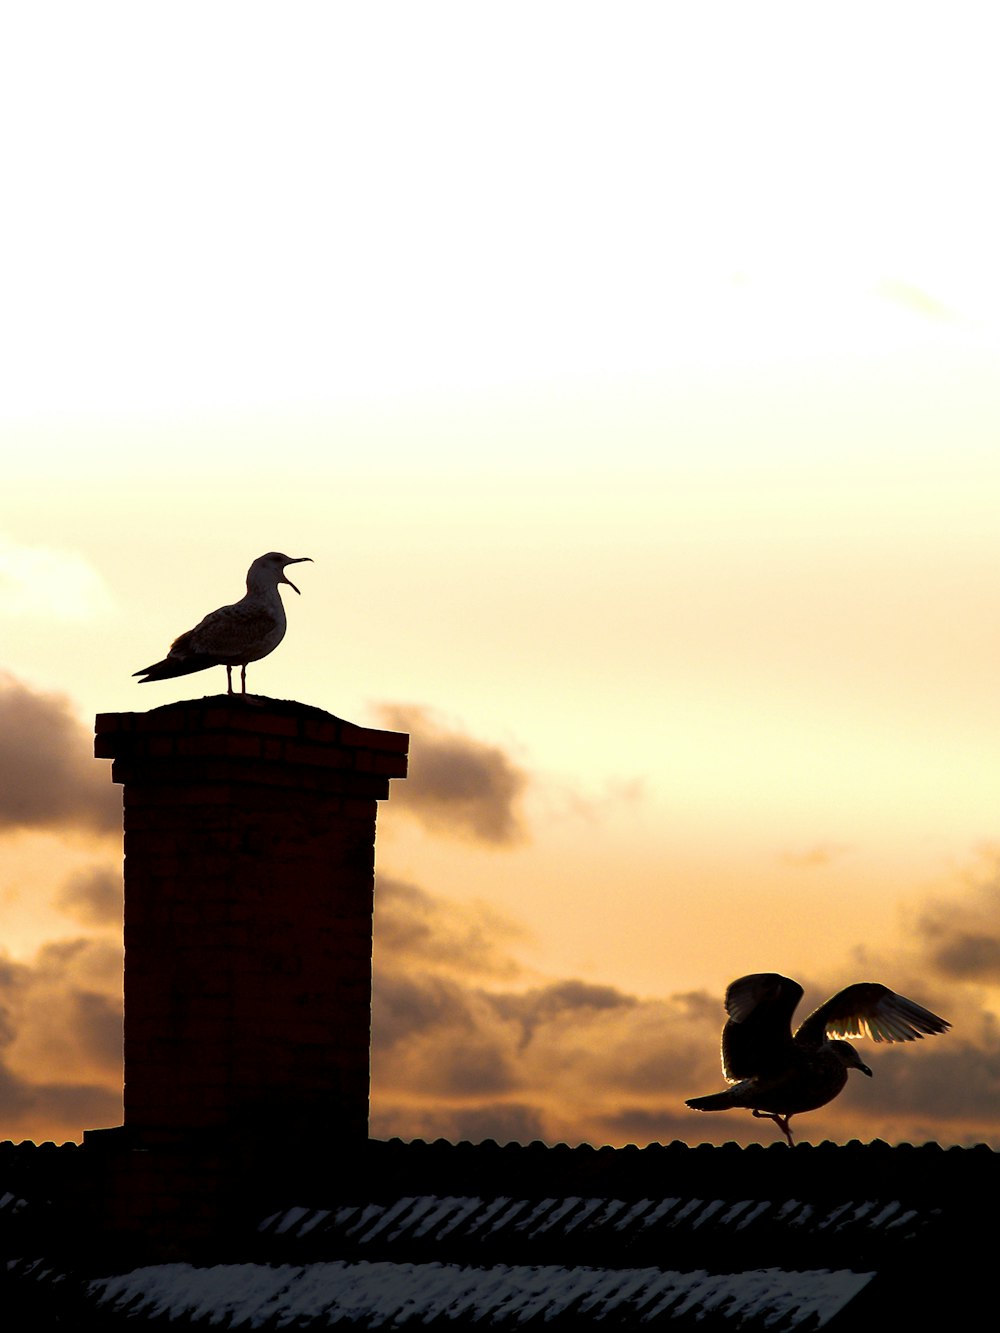 deux oiseaux sur la cheminée et le toit pendant l’heure dorée